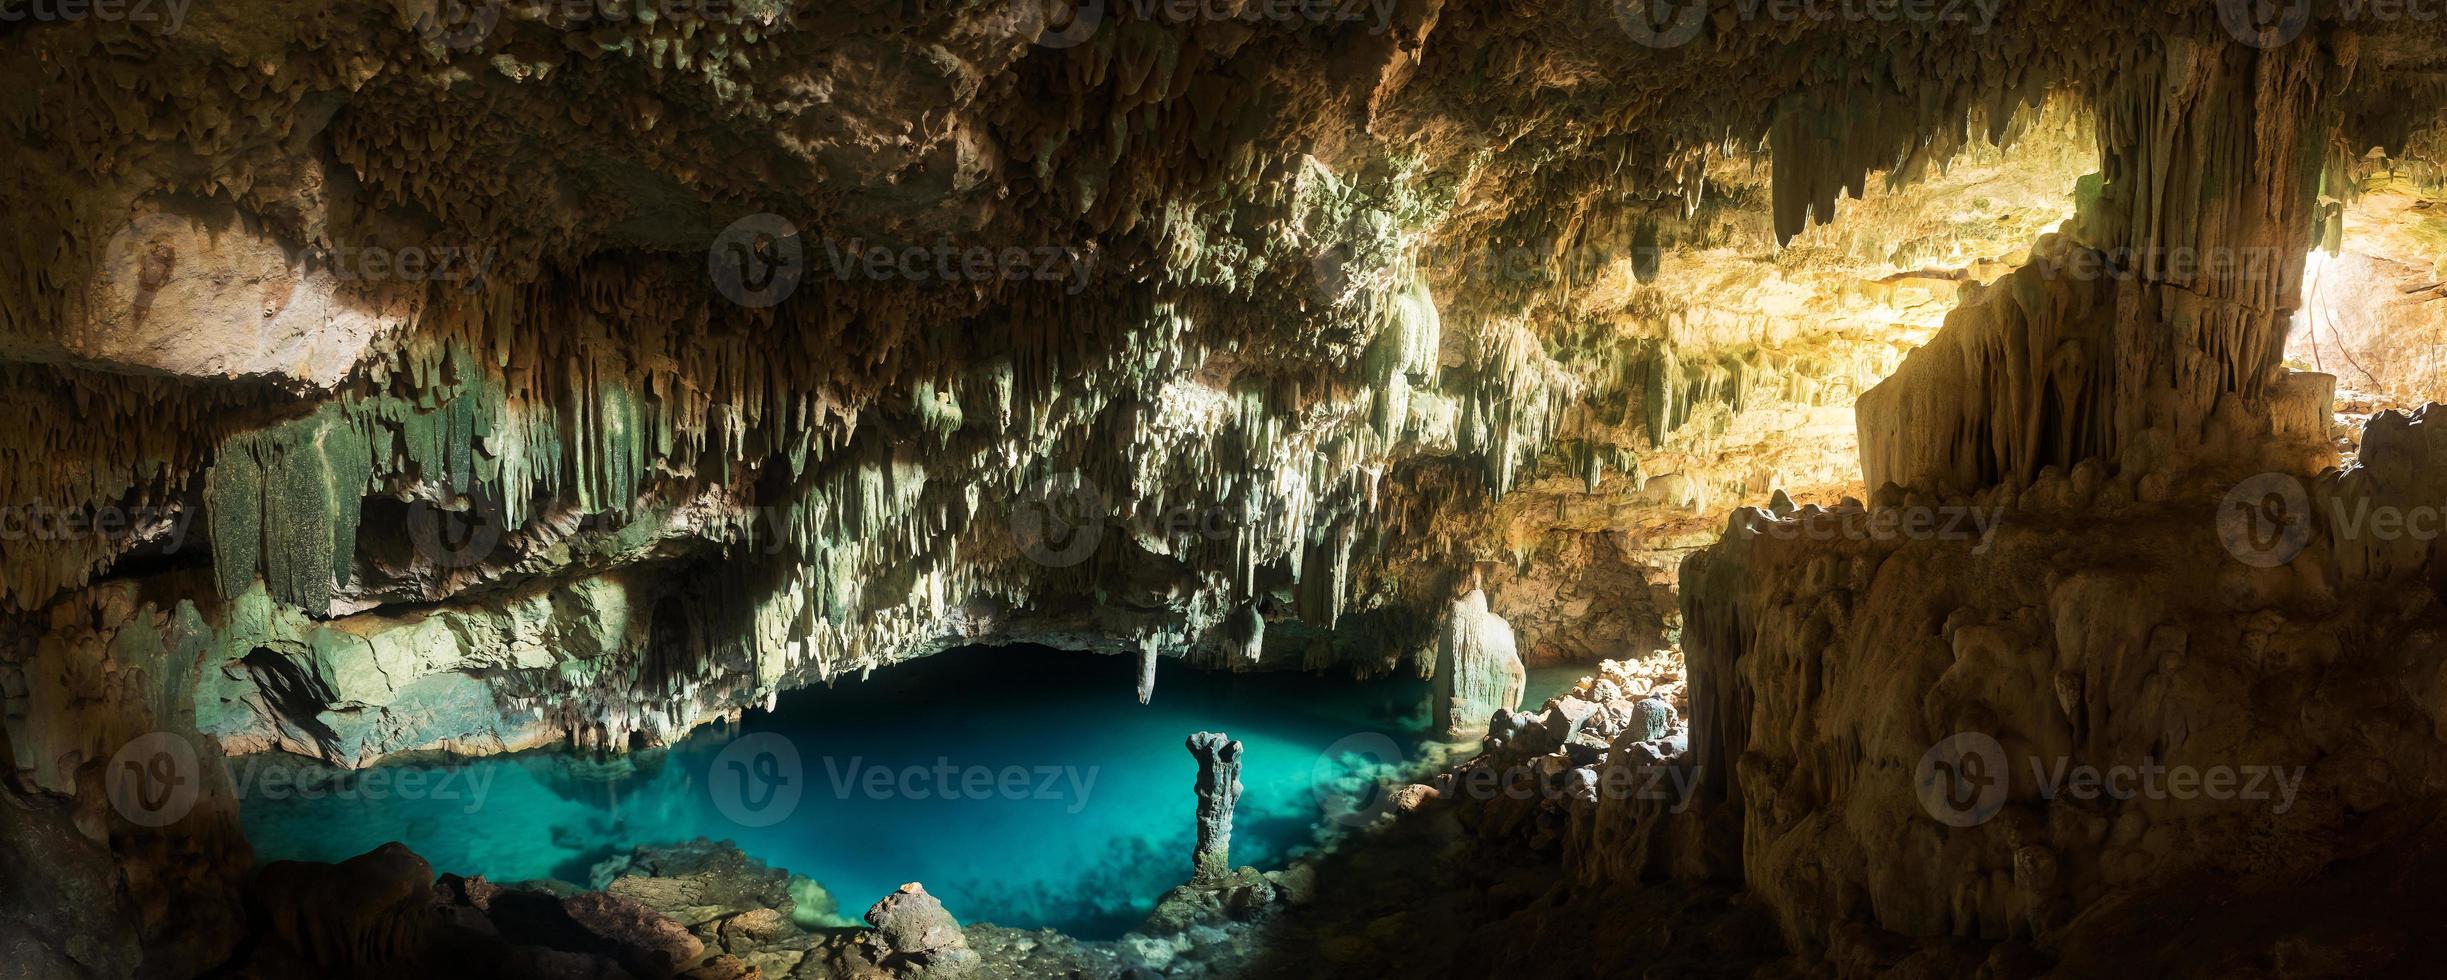 grotta di rangko nell'isola di flores, labuan bajo, indonesia foto